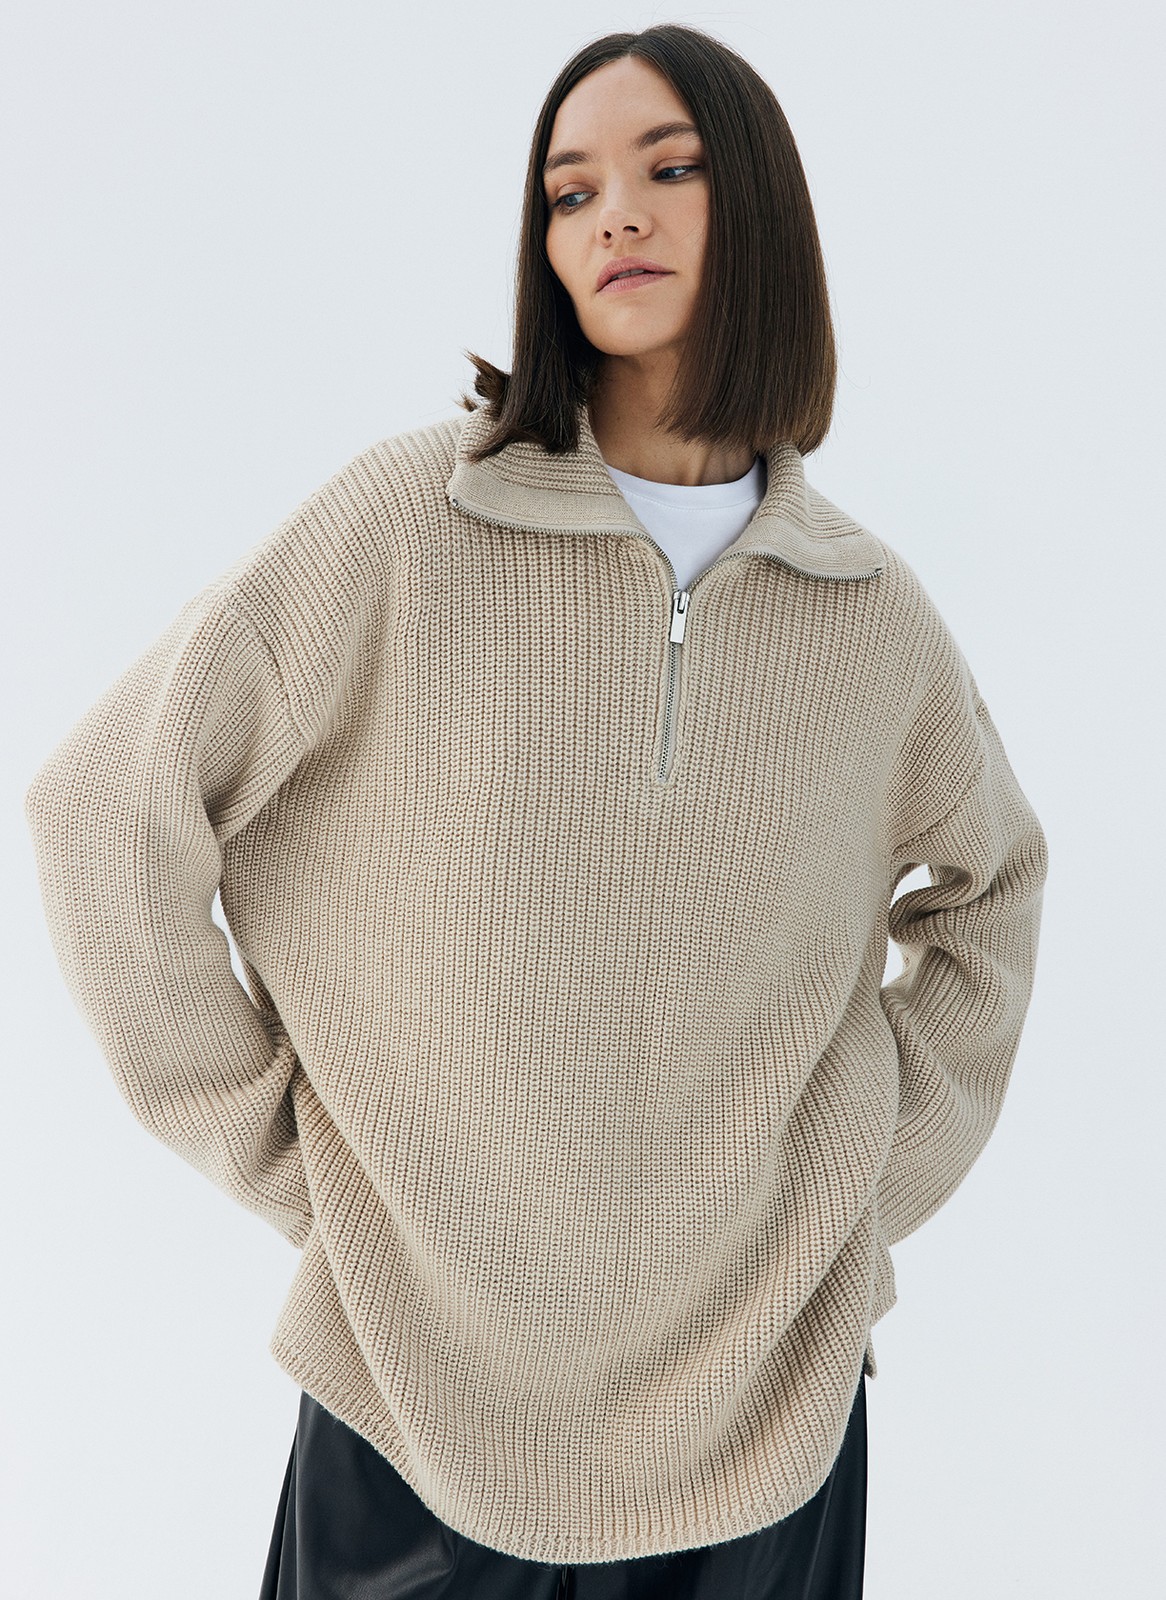 Женский Короткий вязаный объемный свитер купить в онлайн магазине - Unimarket